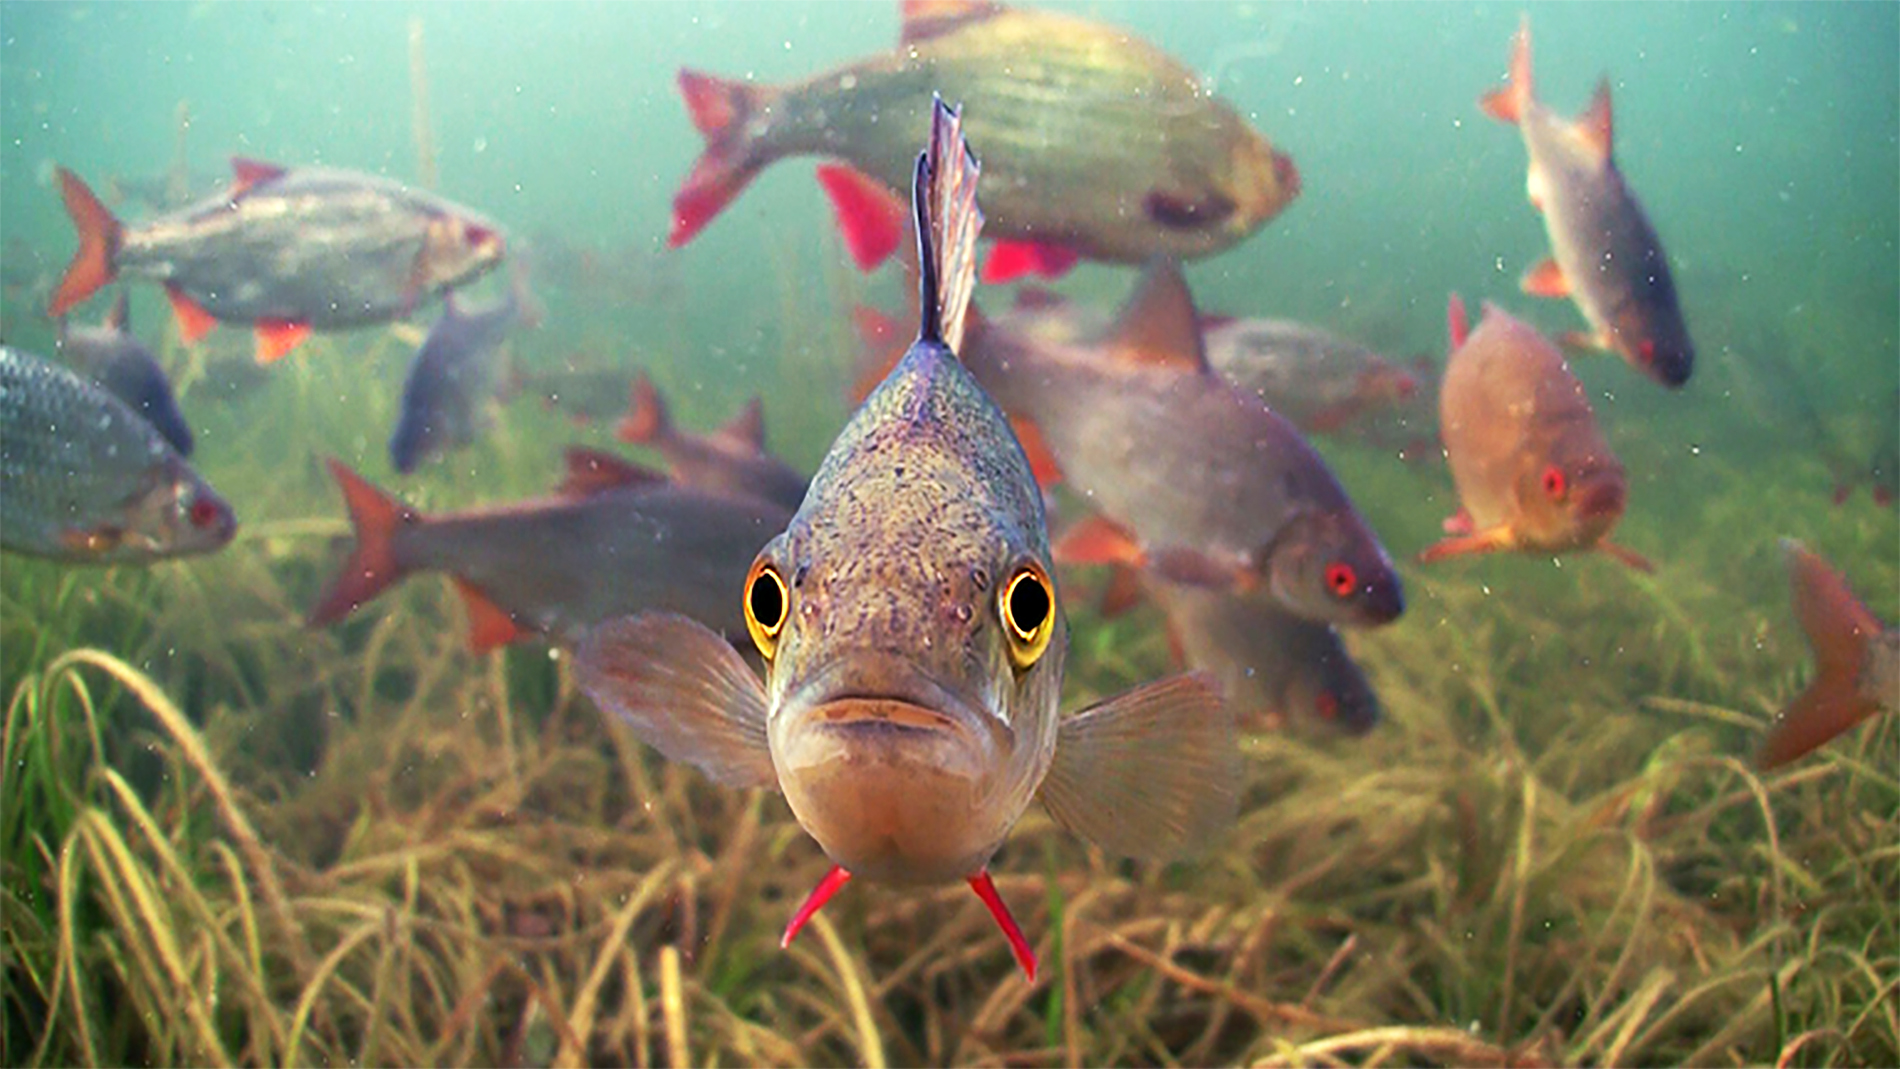 Все виды рыб речных фото